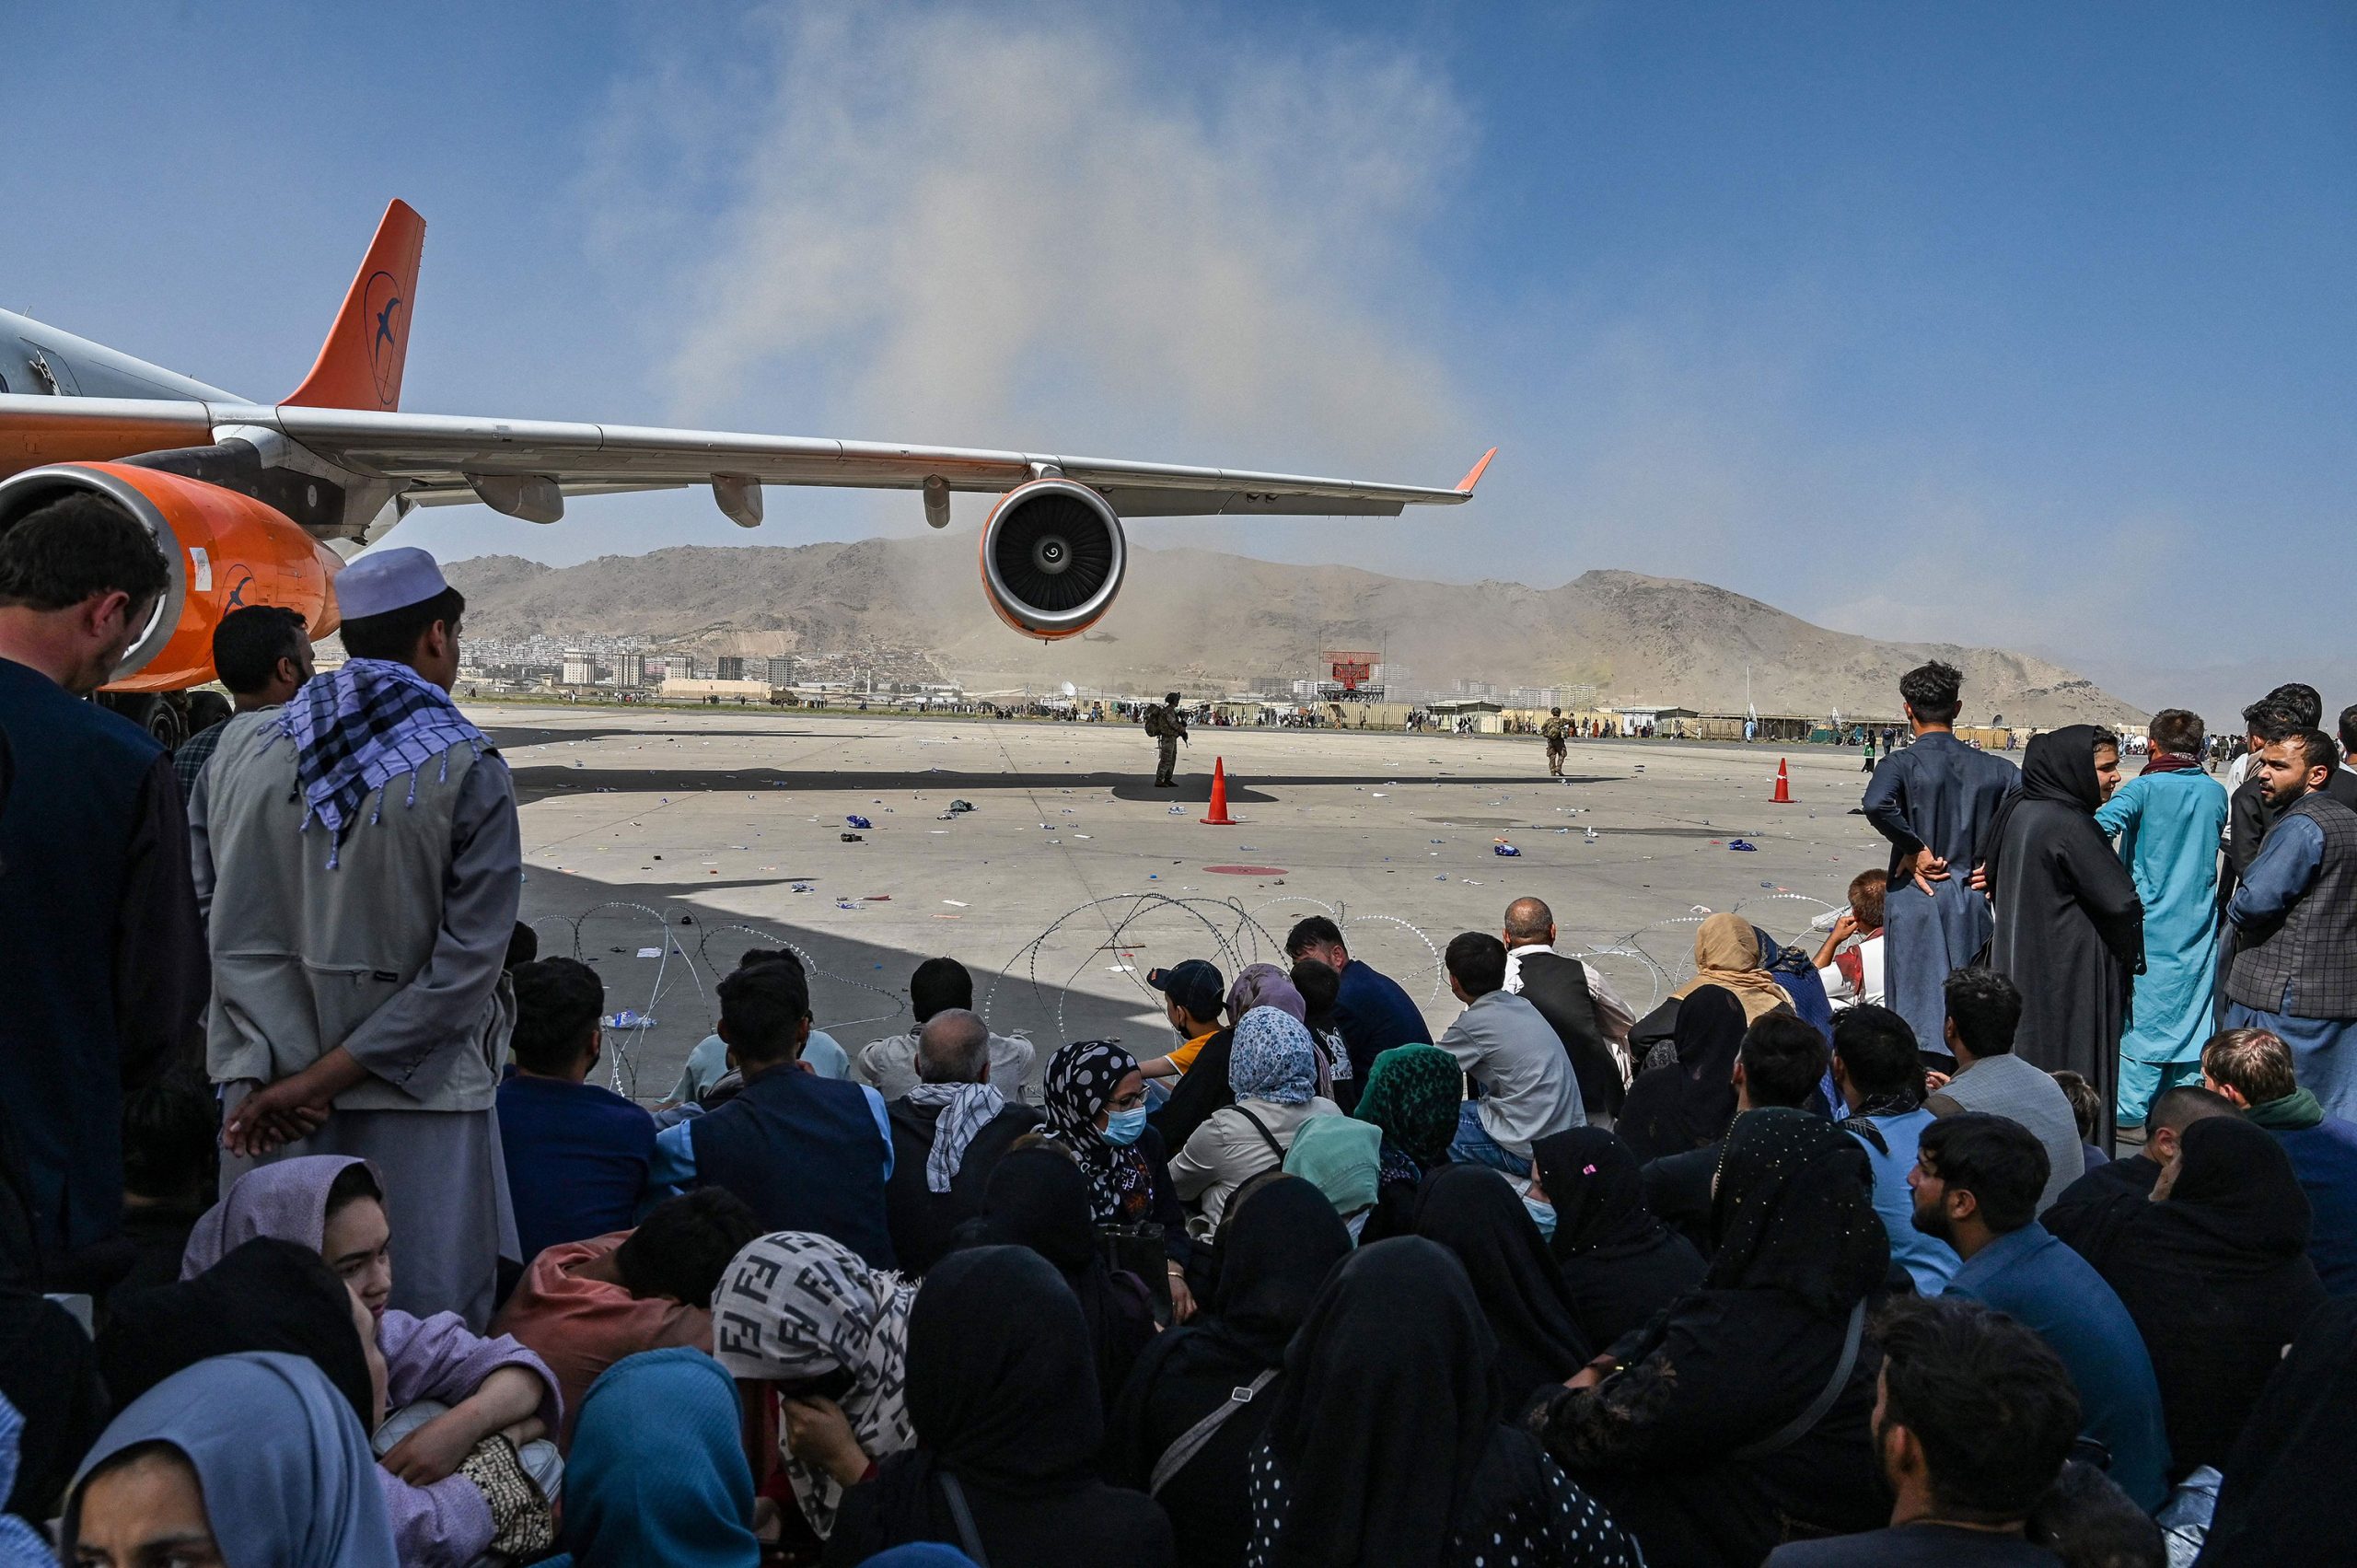 “Mendova se ky është fundi dhe do të vdes,” studentja afgane tregon përvojën në aeroportin e Kabulit